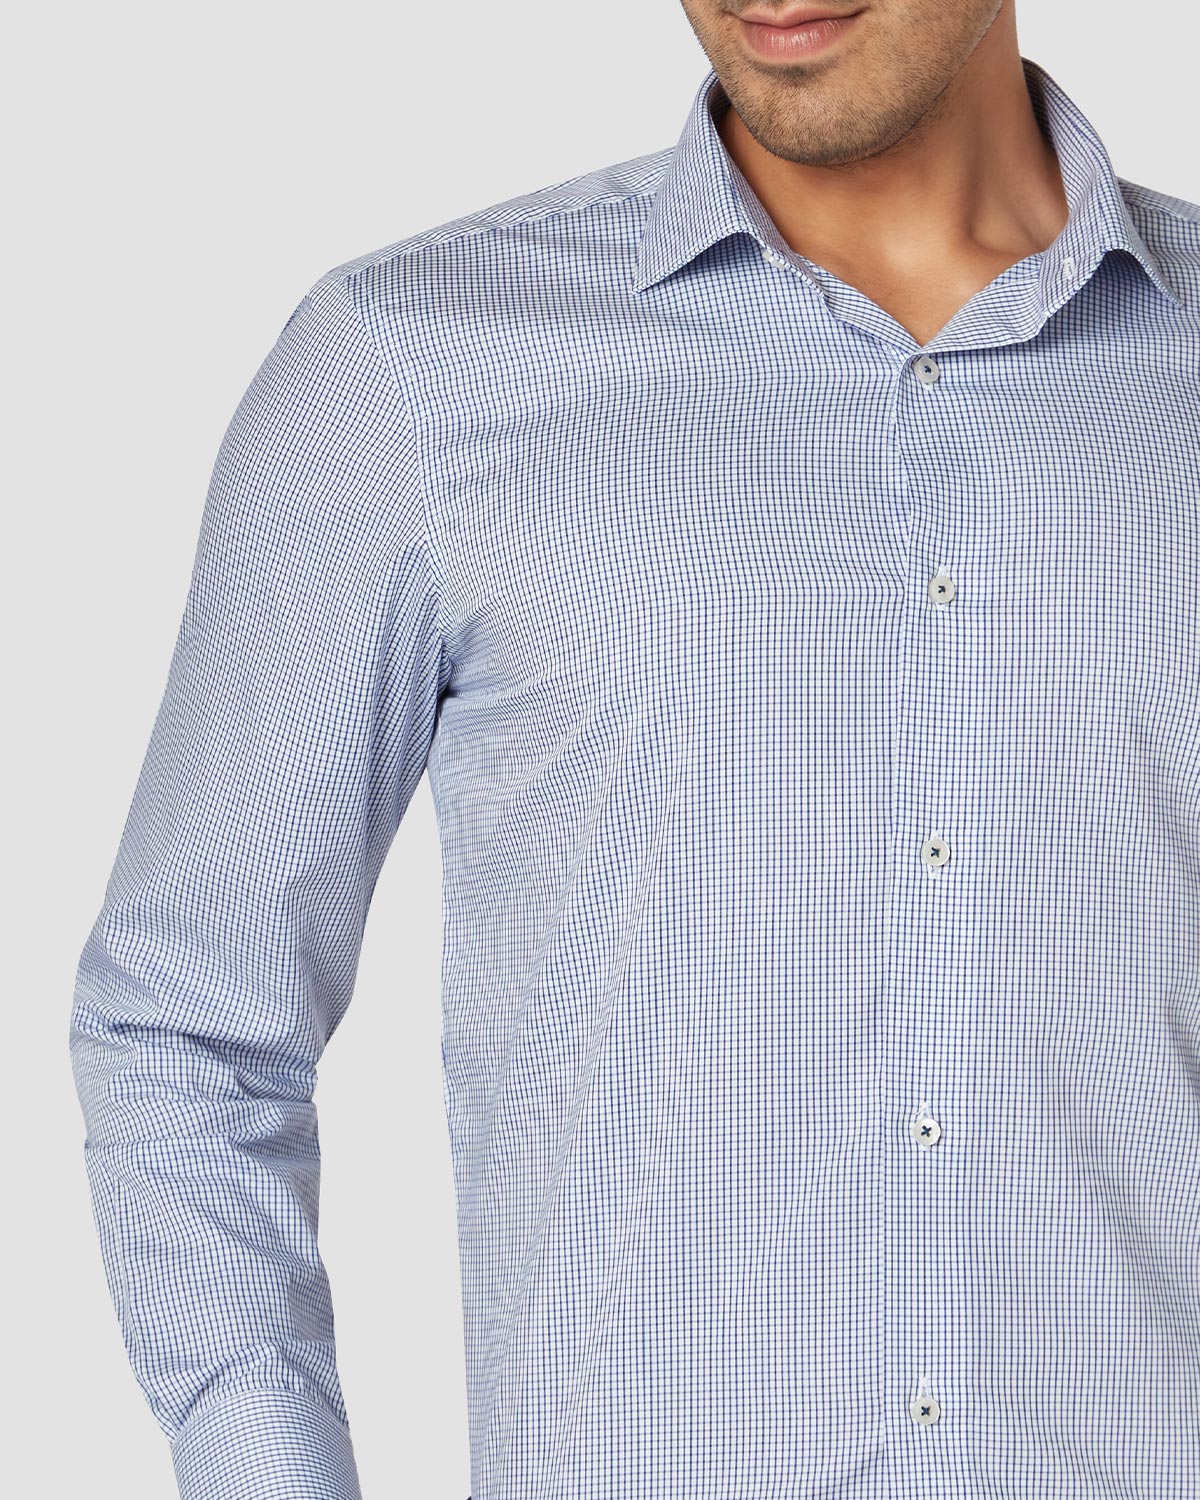 Bombay Shirt Company - Thomas Mason Blue Brook Wrinkle Resistant Shirt